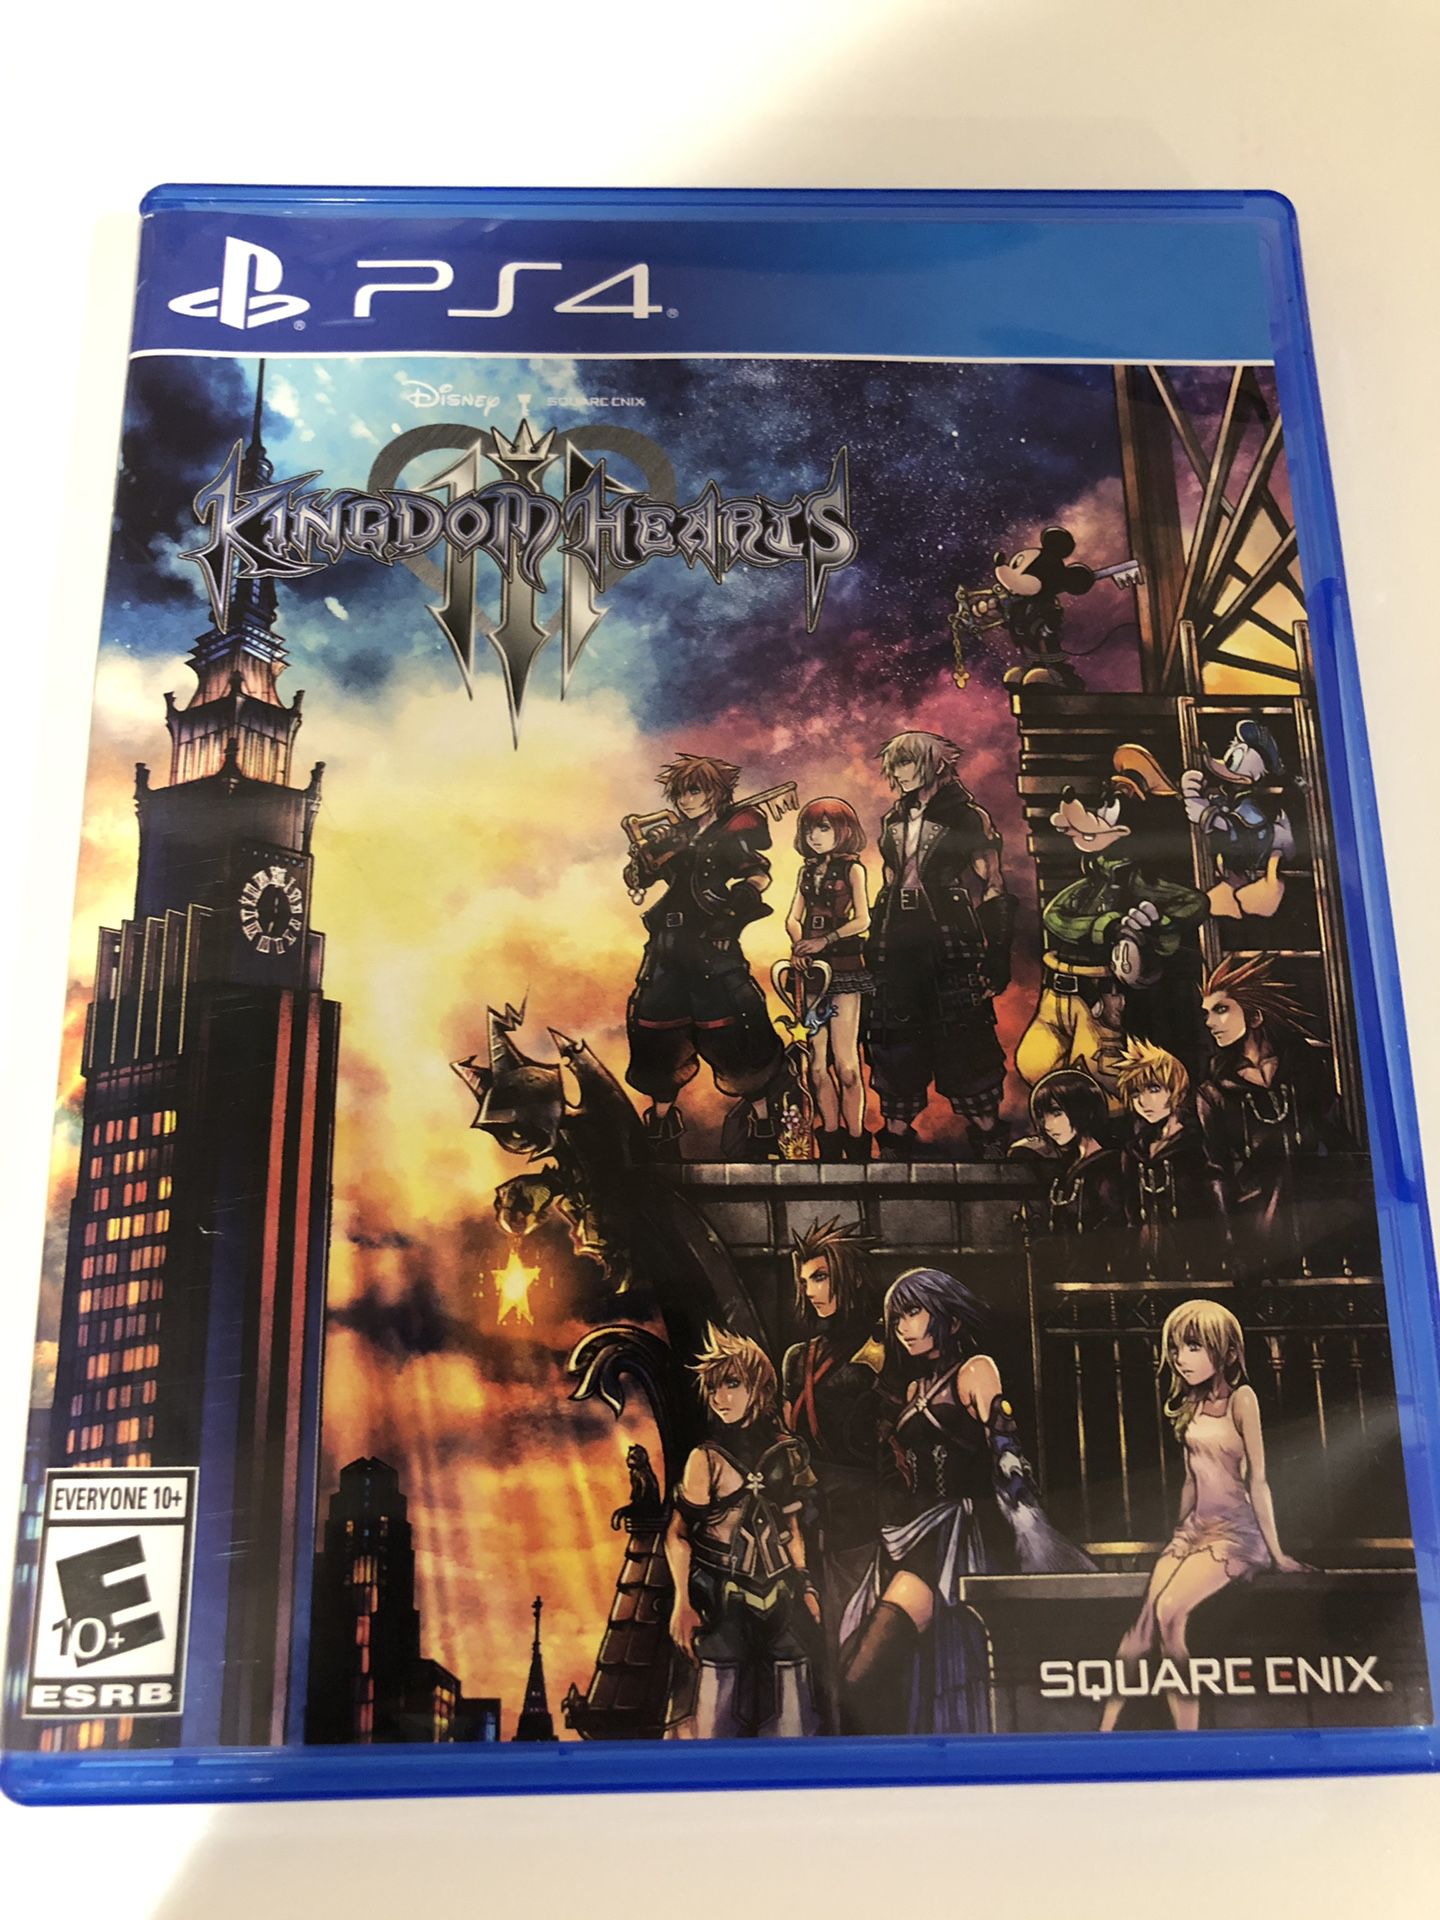 PS4 Kingdom Hearts III